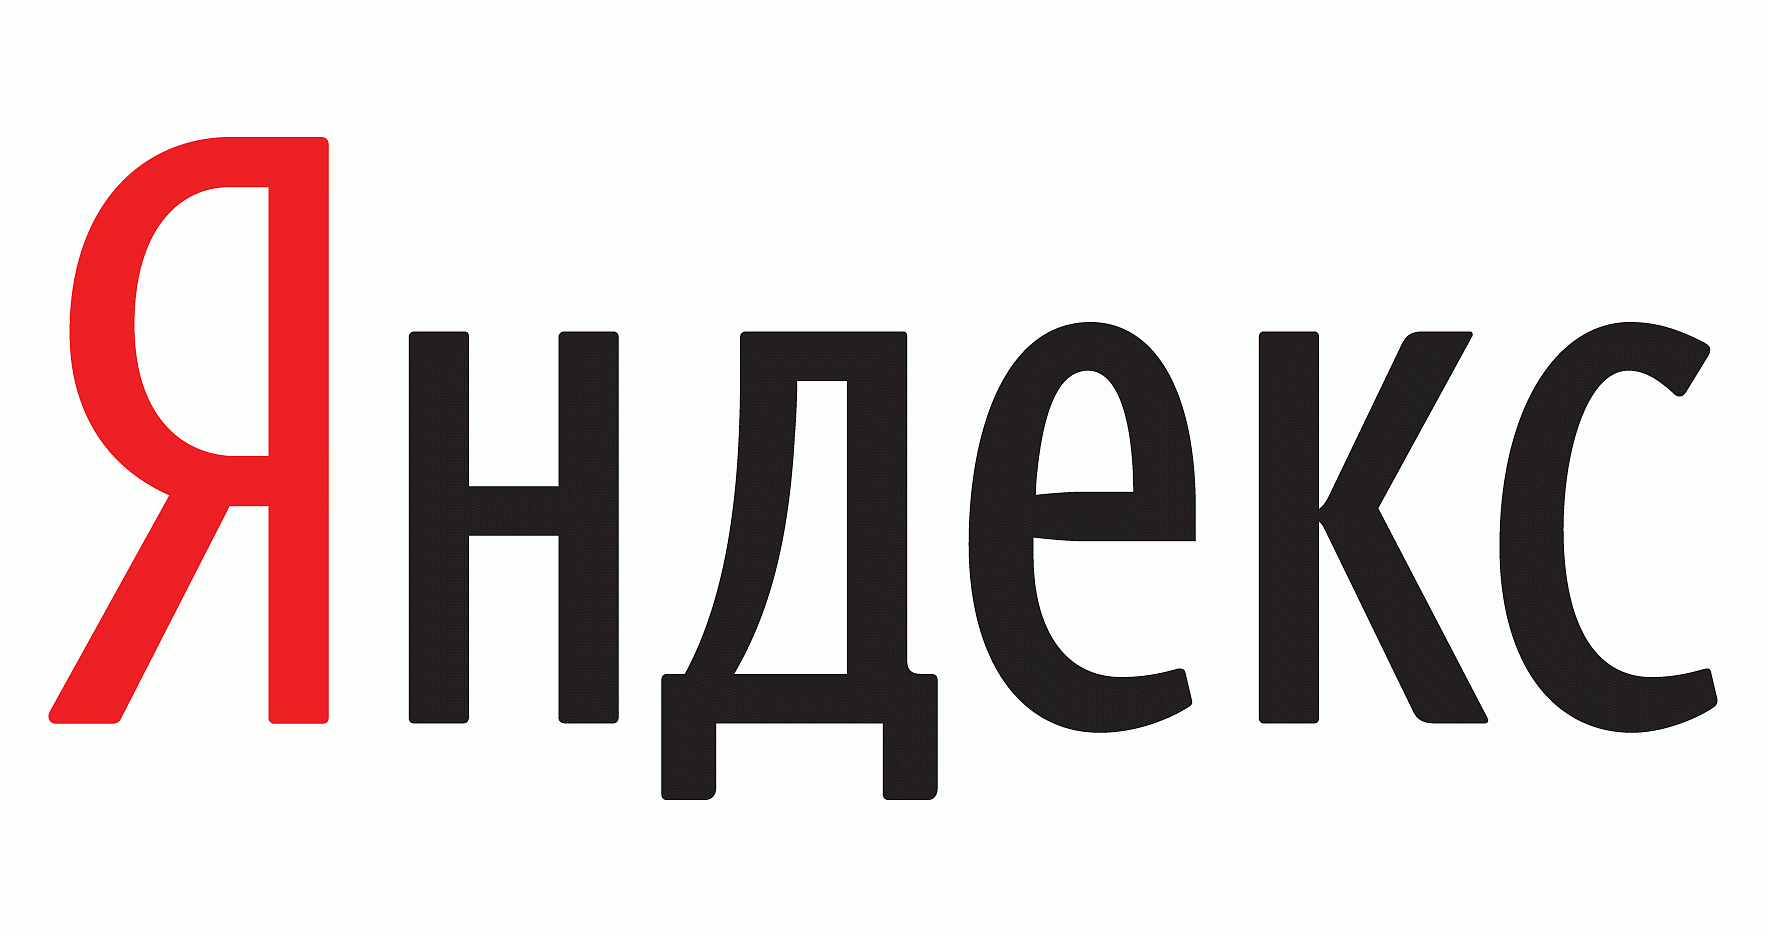 Компания "Яндекс"